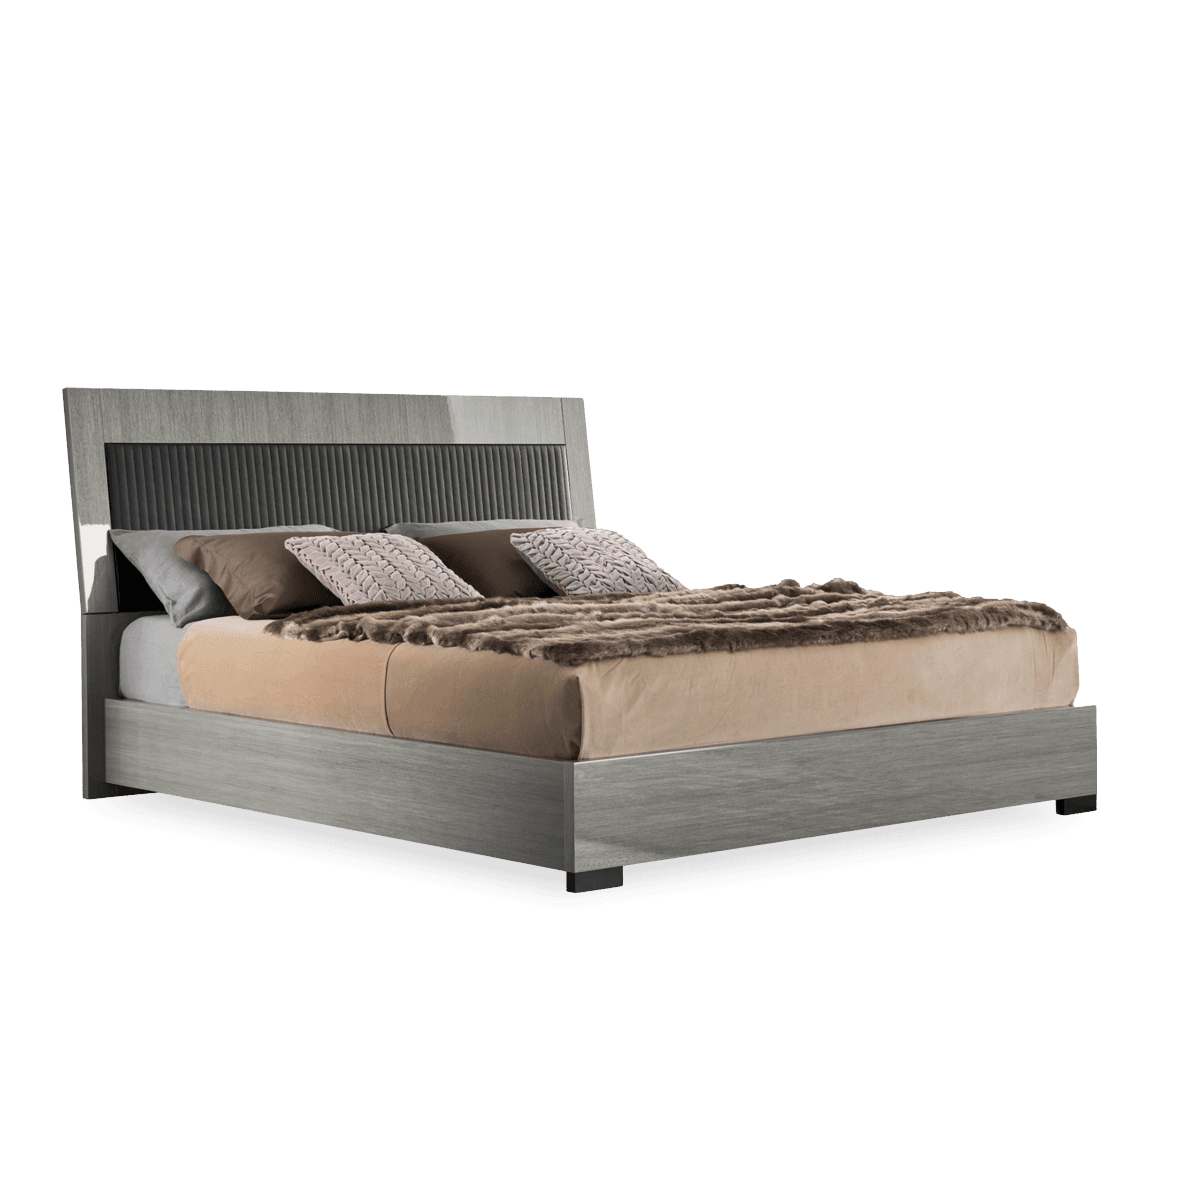 Novecento Ks Bed Upholstered - Silver Wood